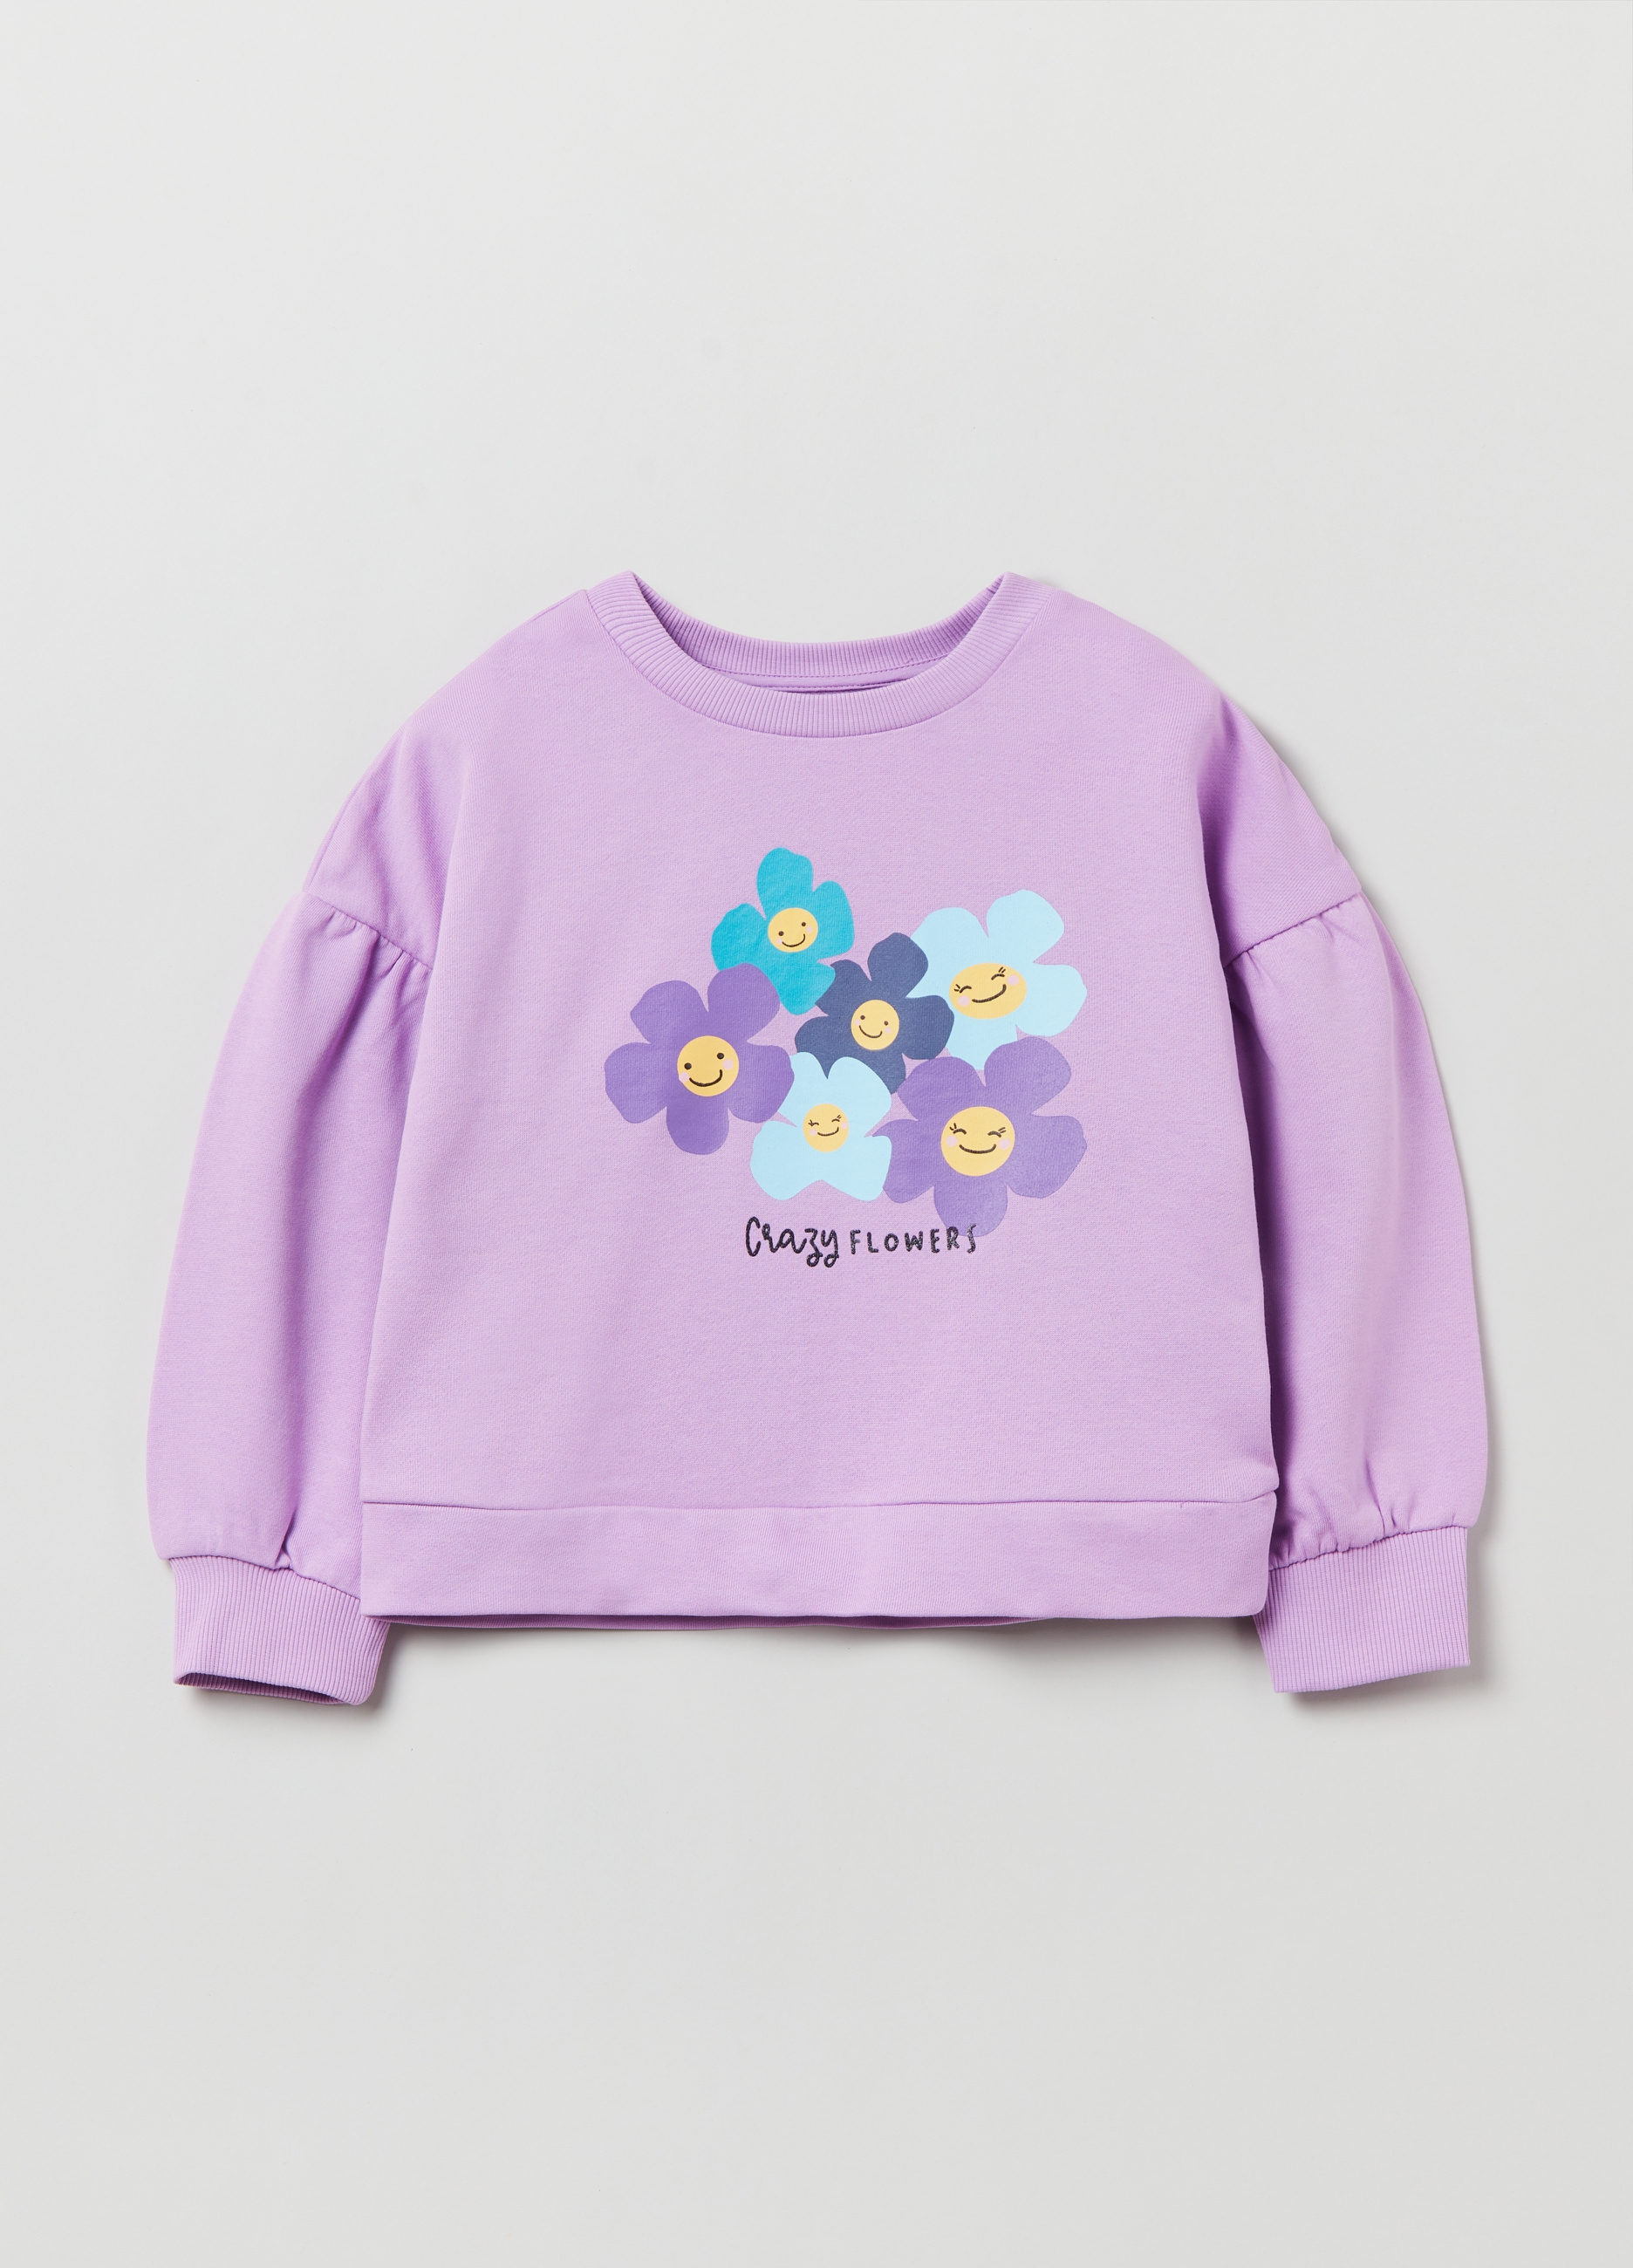 Фуфайка OVS для девочек, фиолетовая, 7-8 лет, 1893089 комплект трикотажный для девочек фуфайка футболка юбка шорты